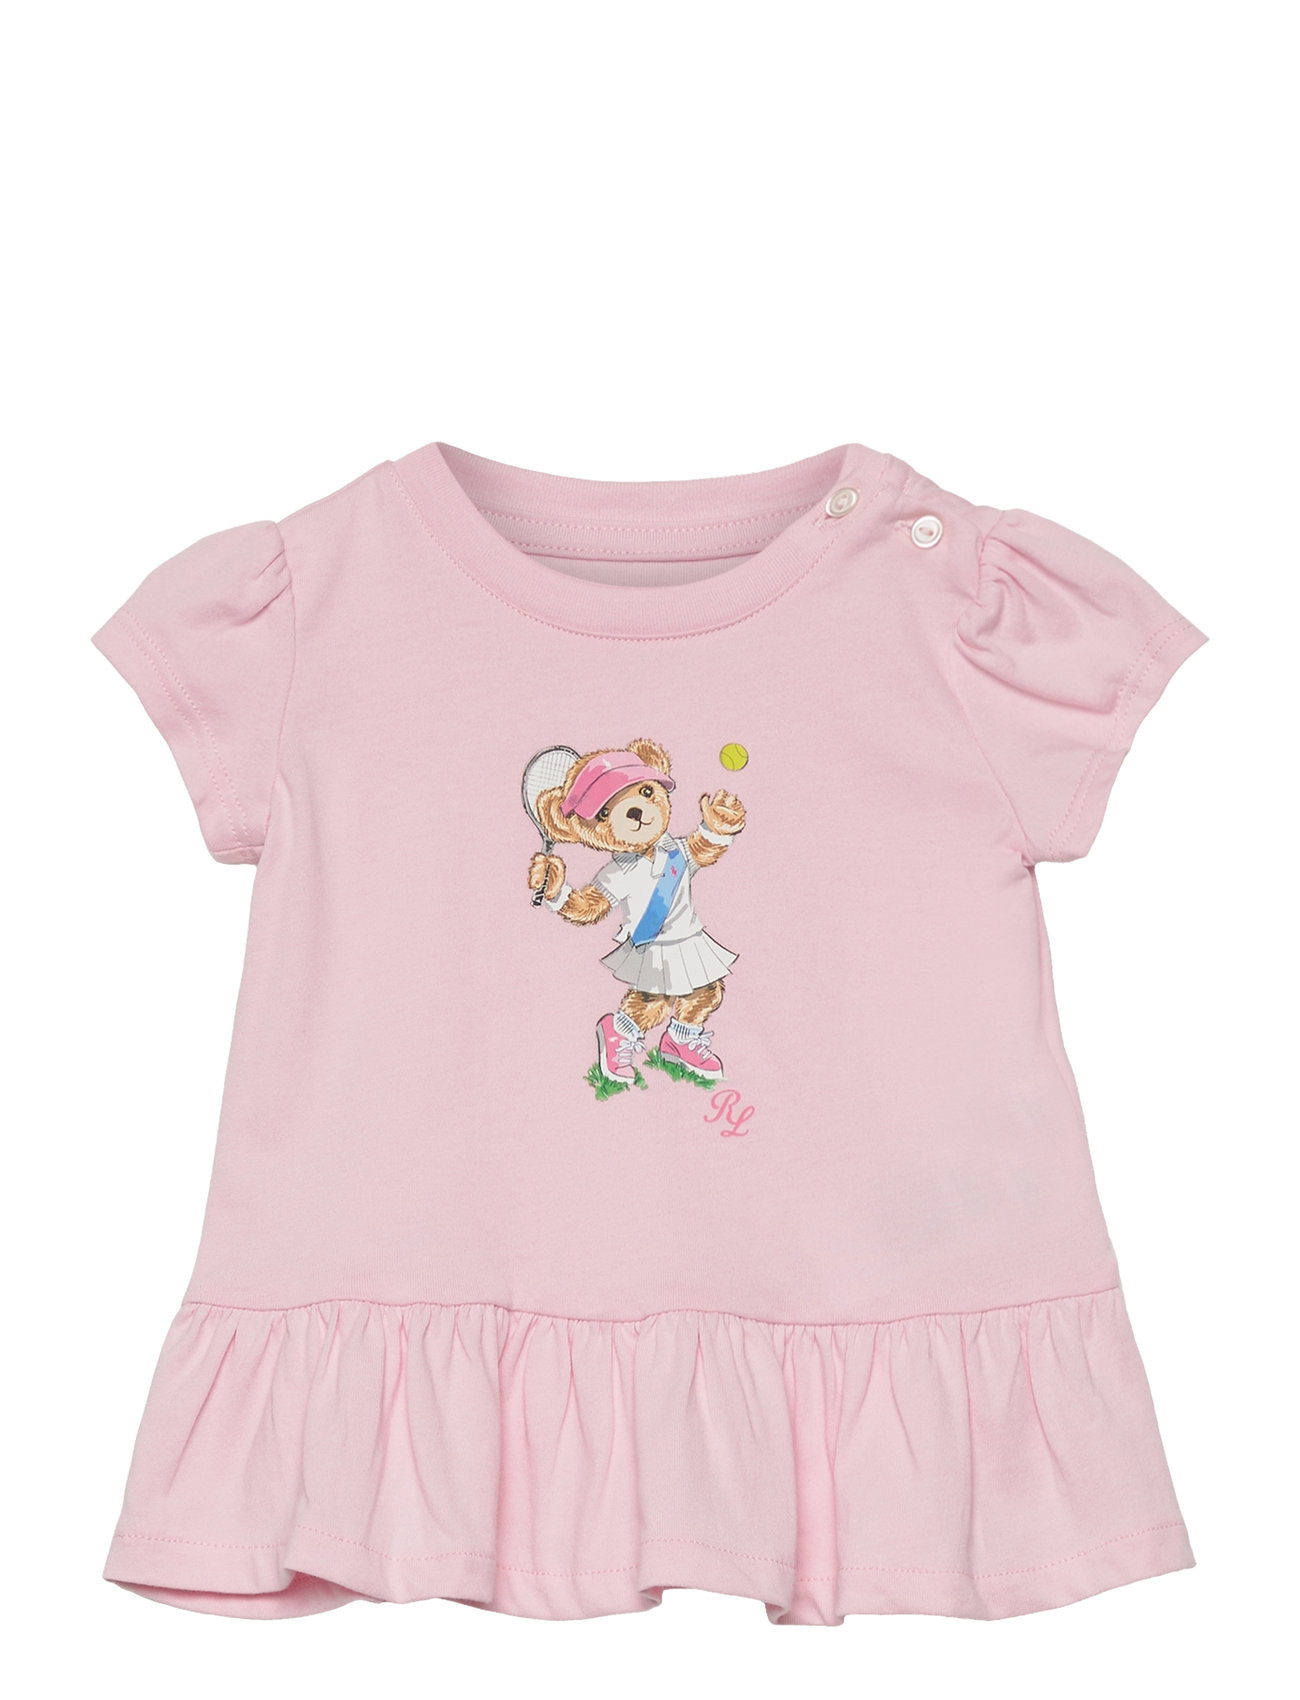 Polo Bear Cotton Jersey Peplum Tee Tops T-shirts Short-sleeved Pink Ralph Lauren Baby